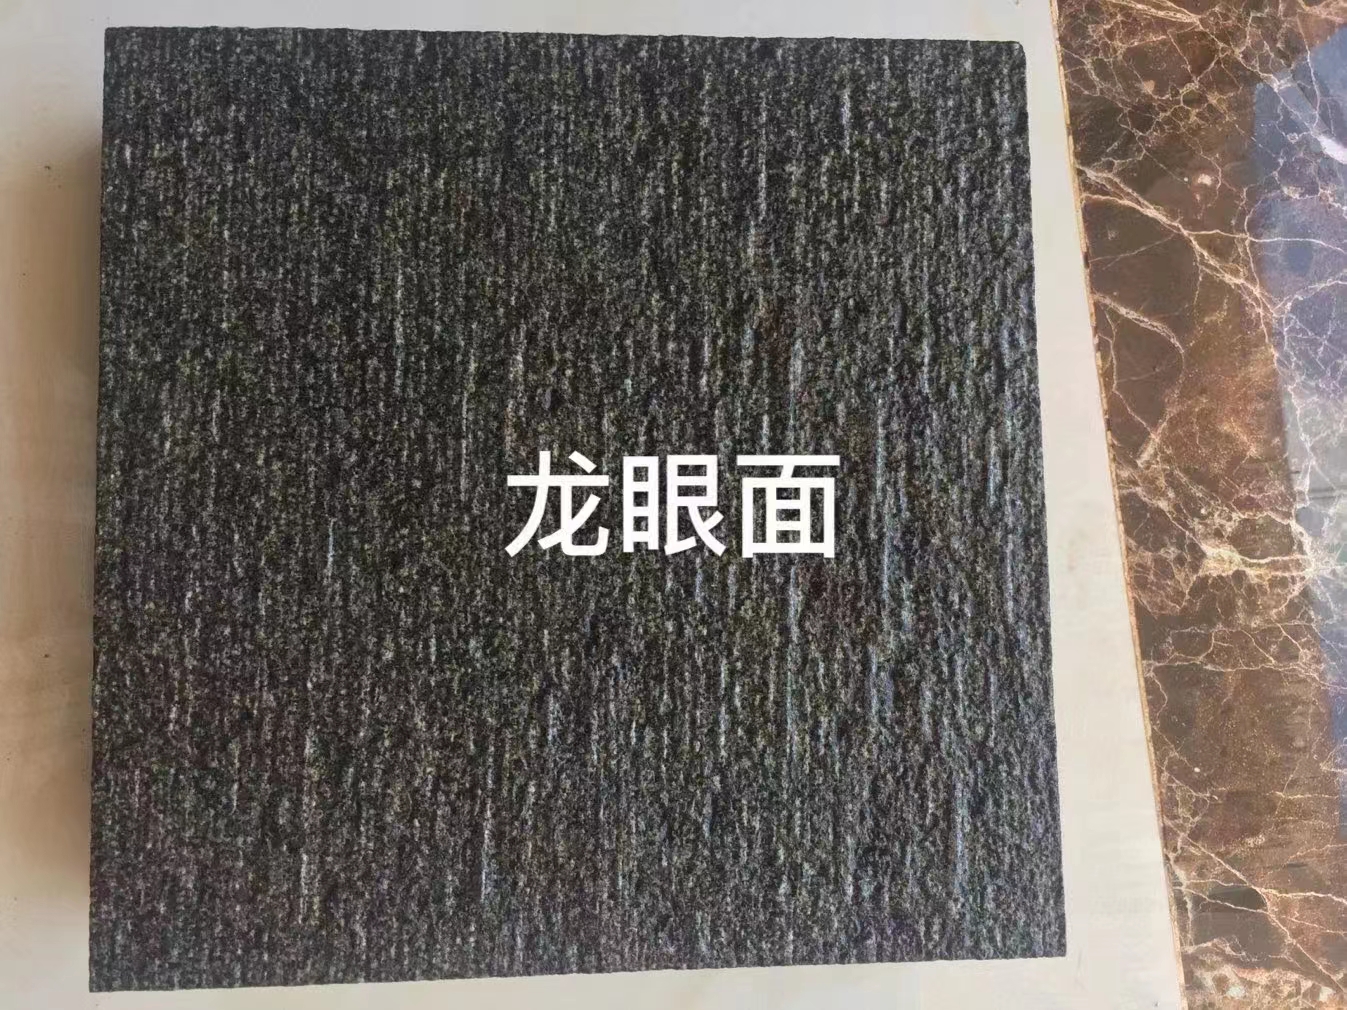 中国黑石材厂家哪家好中国黑石材批发 中国黑石材供应商 中国黑石材厂家哪家好